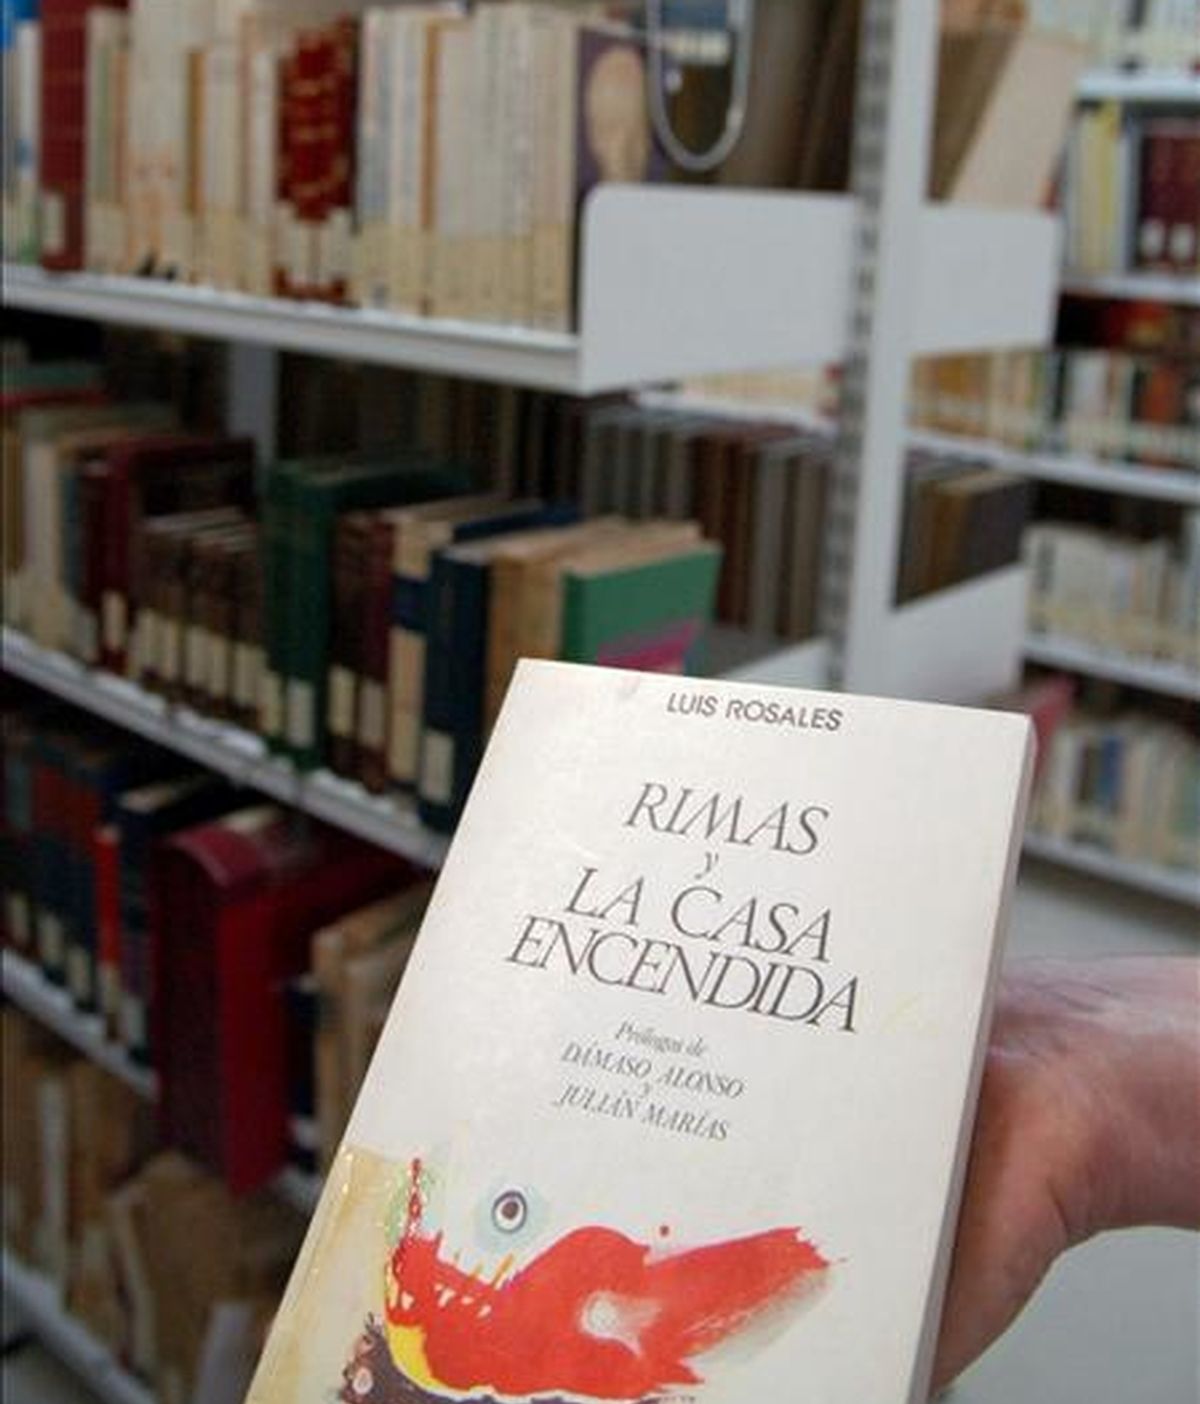 Vista de un ejemplar de la obra "Rimas y La Casa Encendida" de Luis Rosales, el cual se encuentra en la Biblioteca de Andalucía de Granada. EFE/Archivo